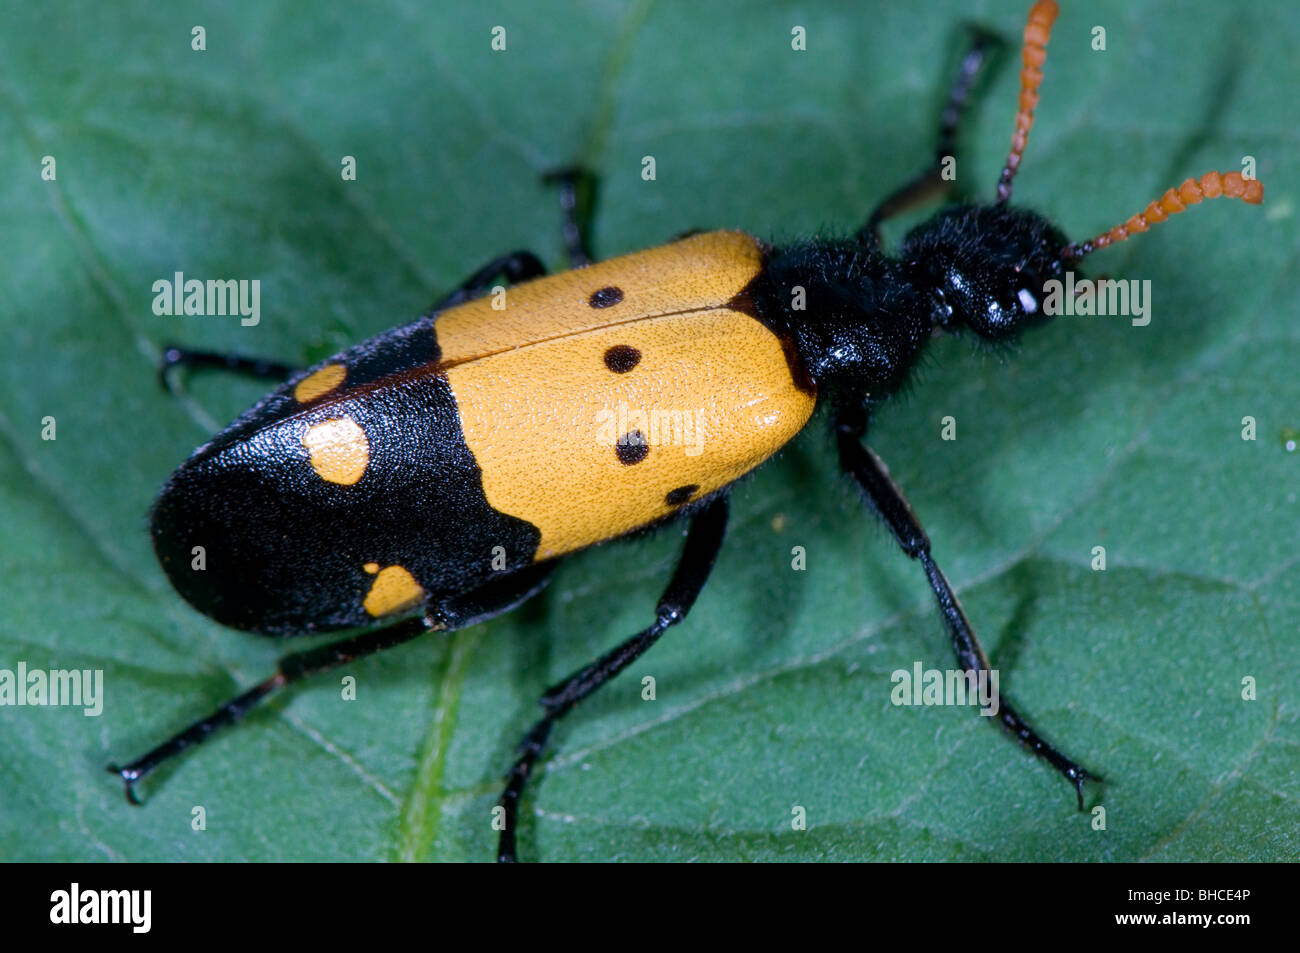 Blister beetle, famille Meloidae, photographié en Tanzanie, Afrique. Banque D'Images